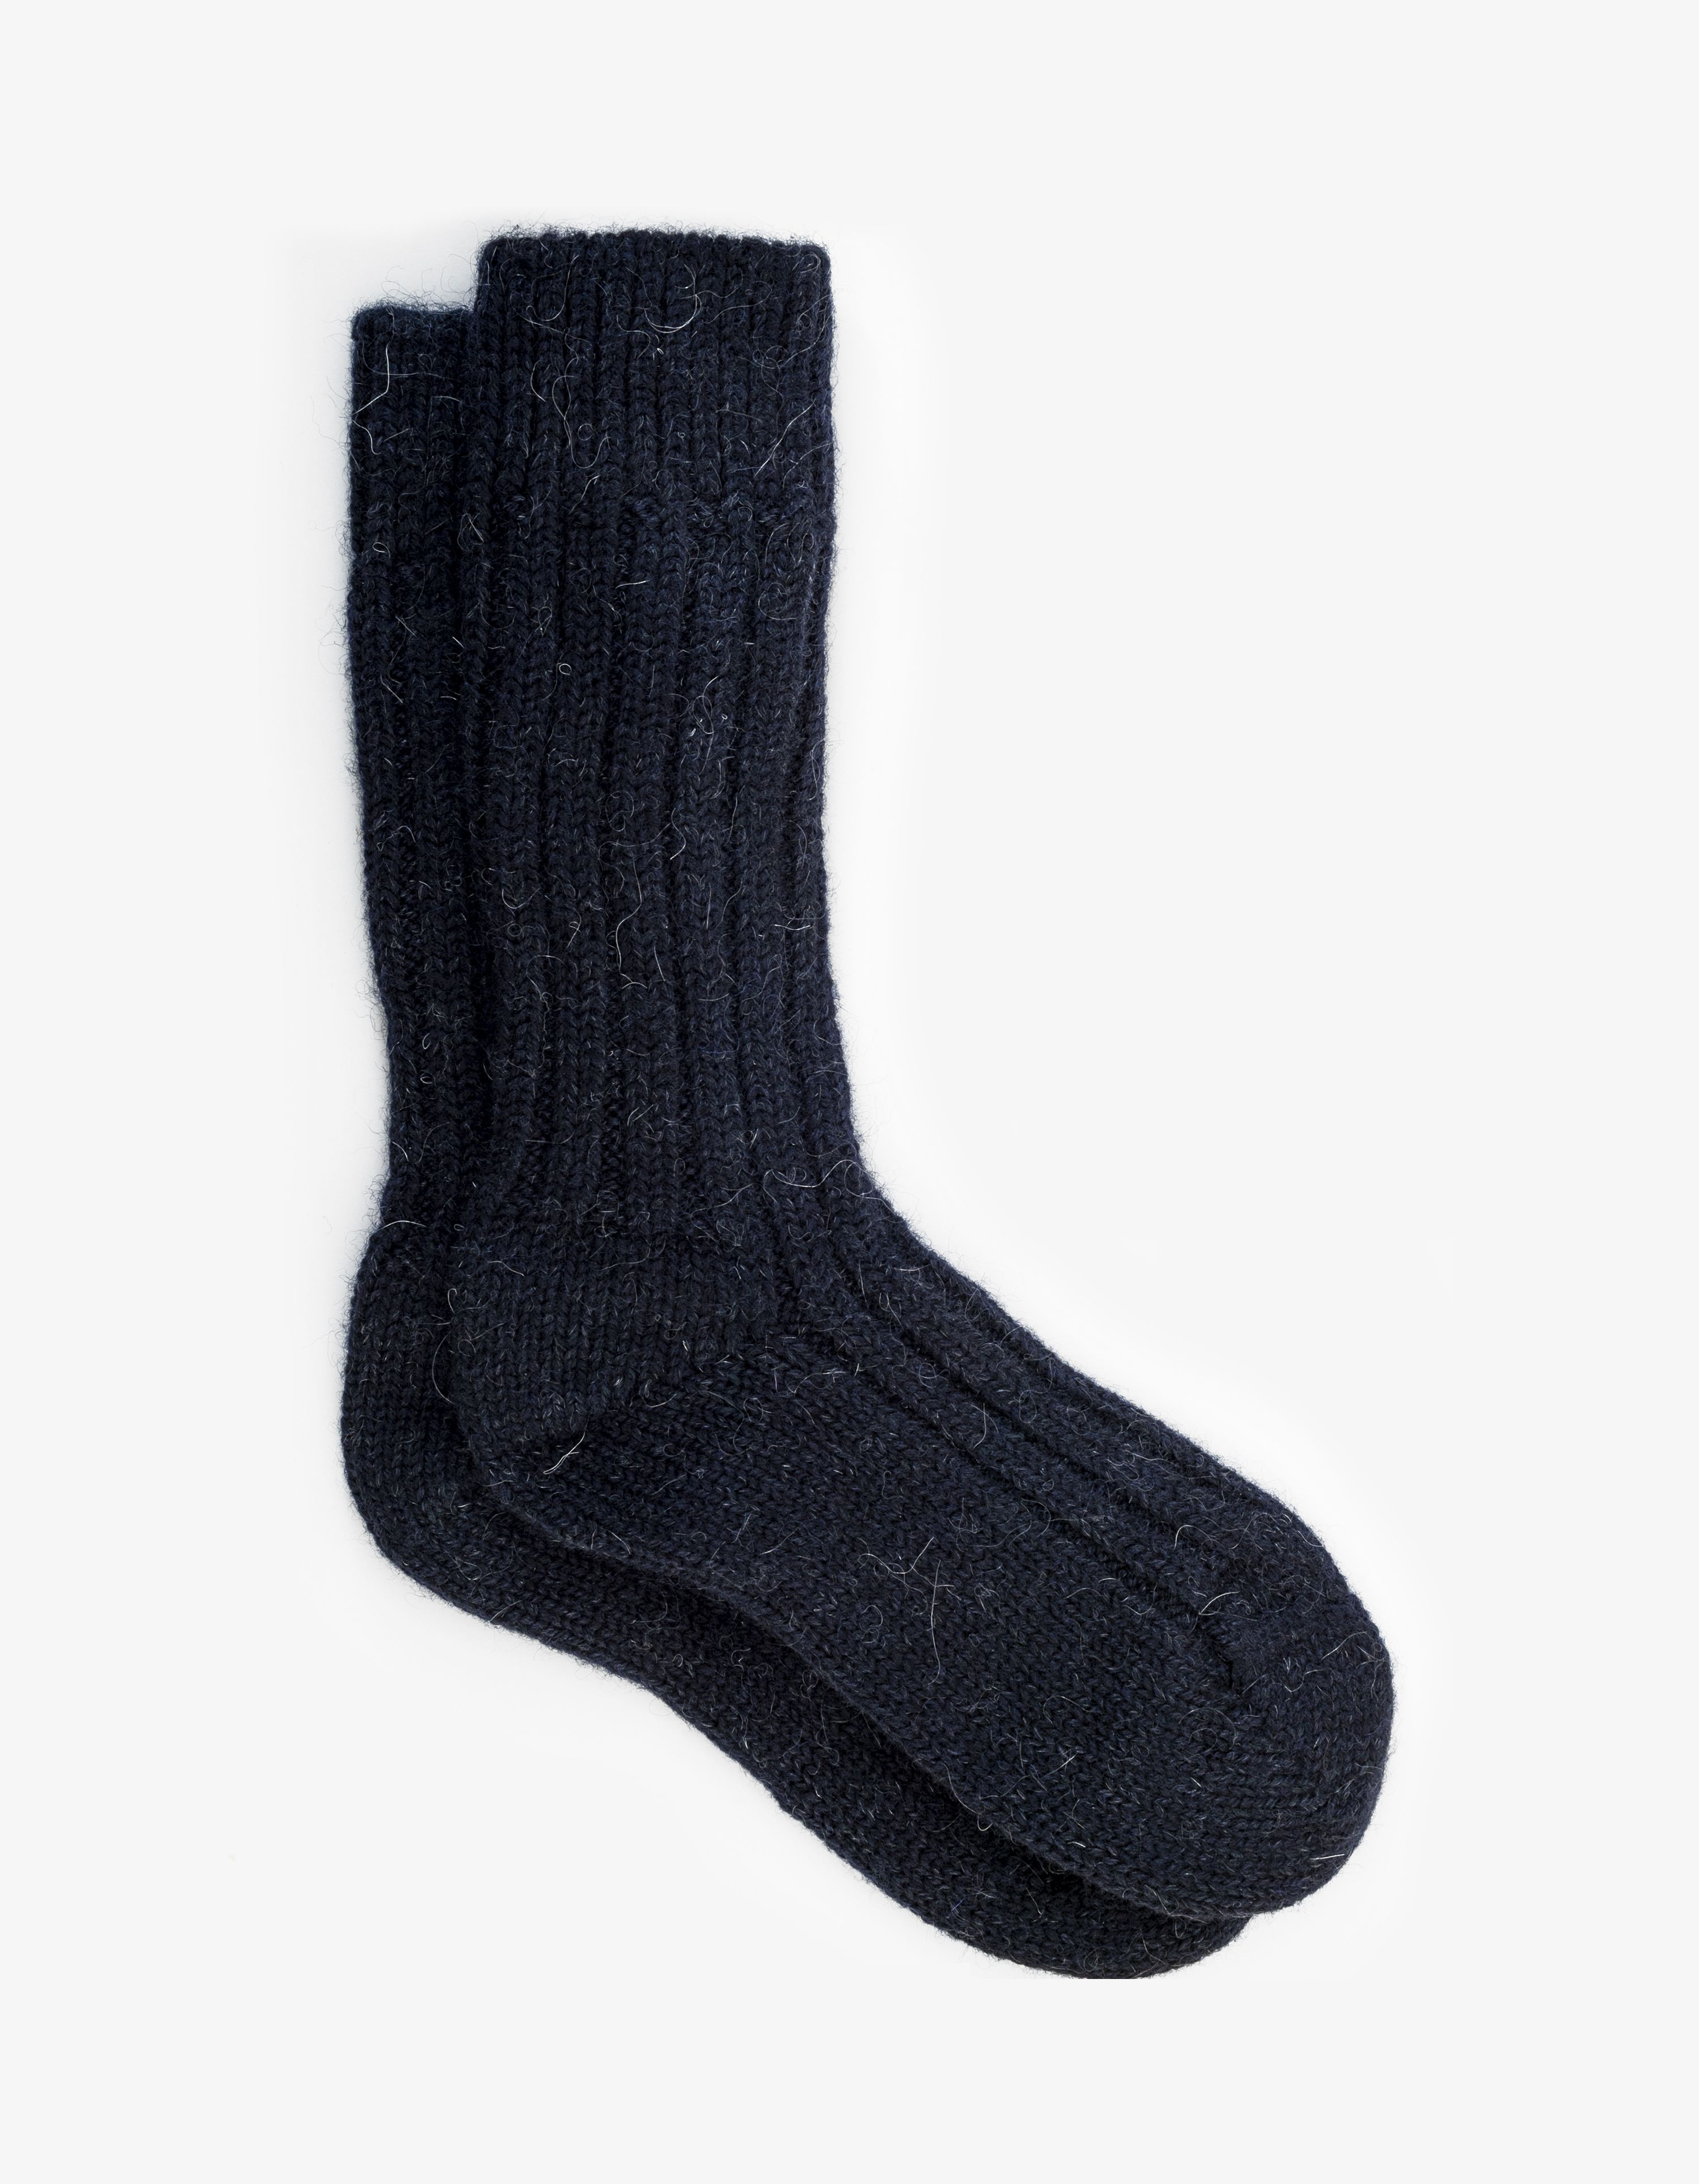 wool socks – 1 of 10